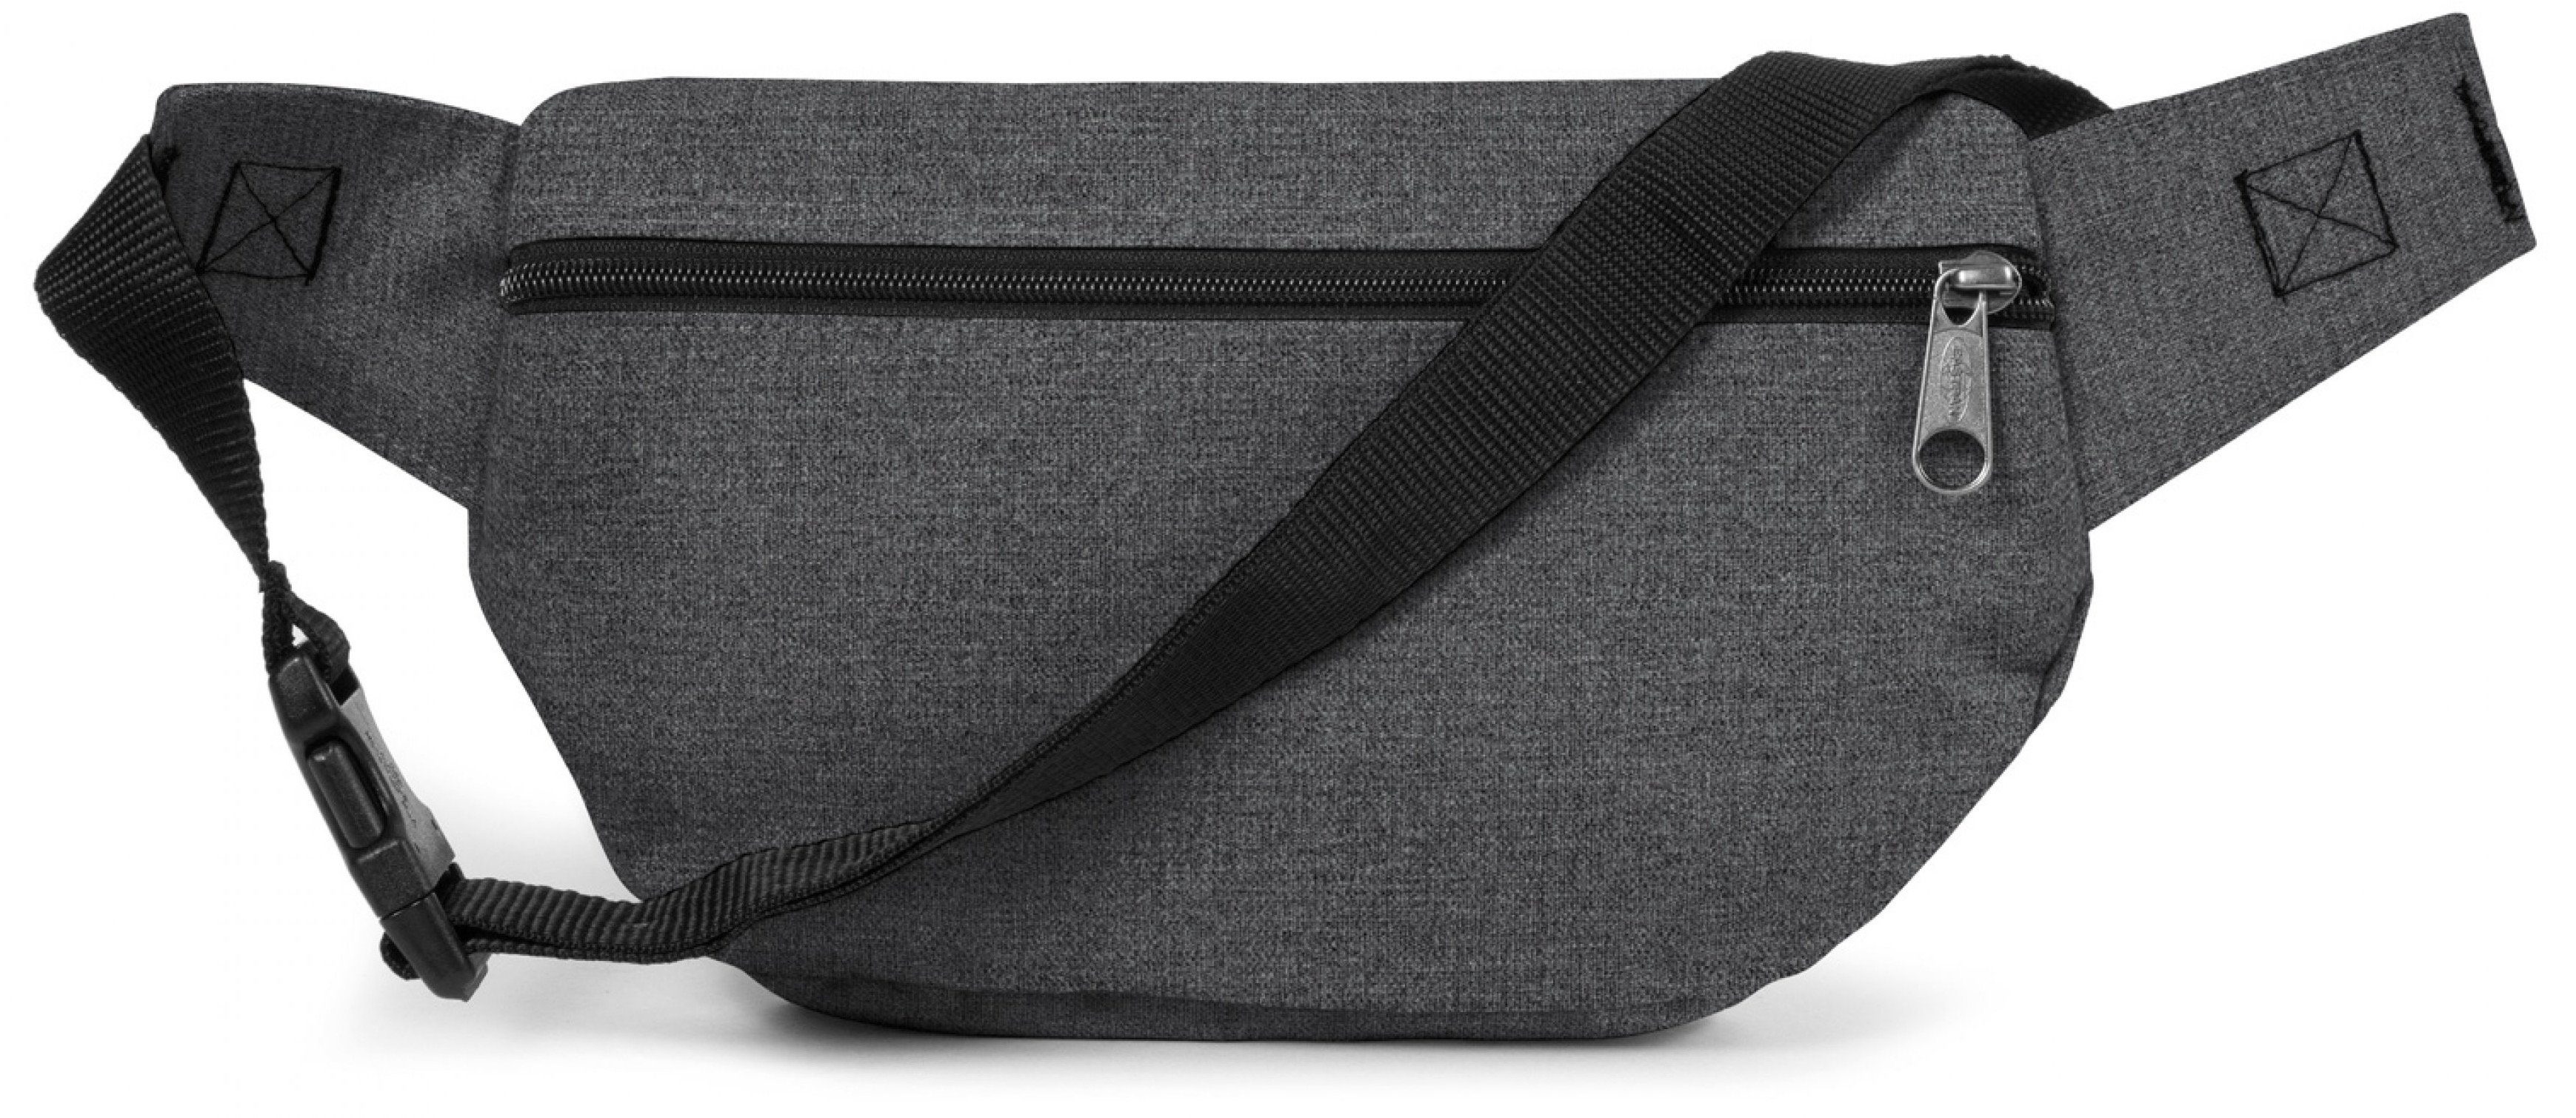 Bauchtasche BAG, DOGGY Black im Eastpak Design praktischen Denim